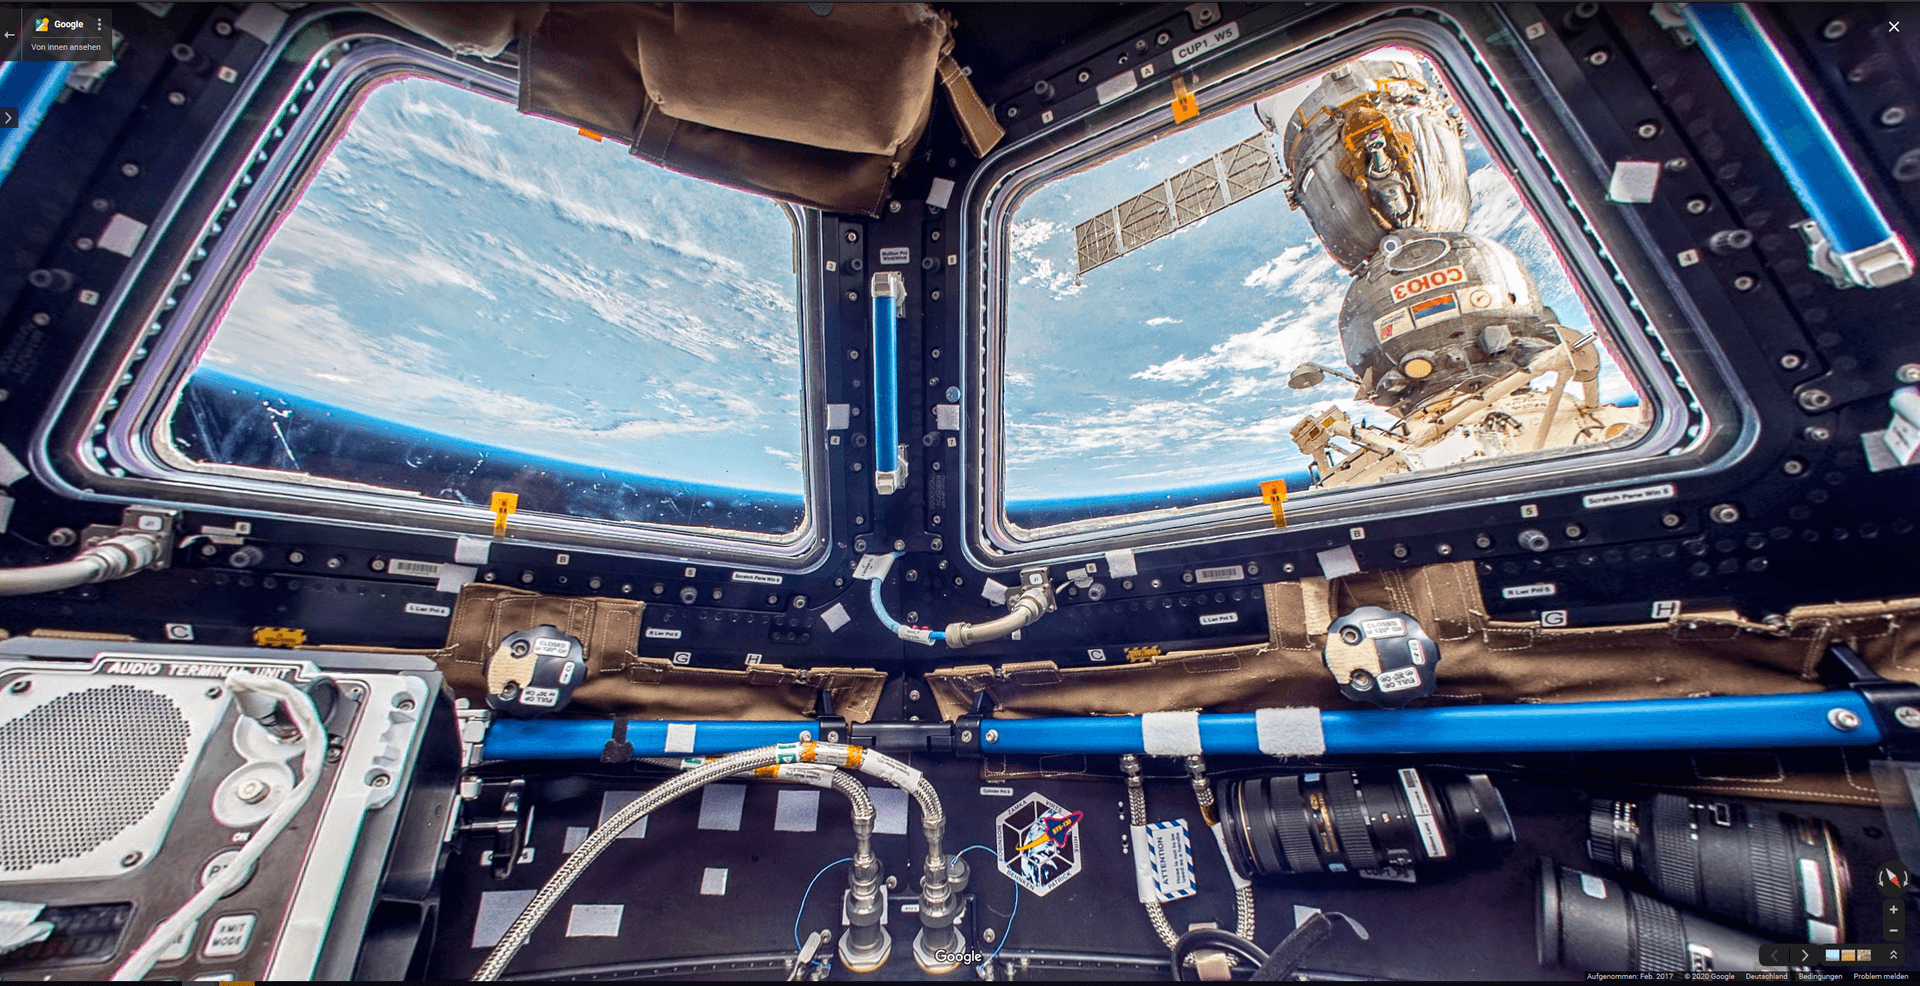 Oben, unten, rechts, links. Selbst in der Kartenapp fällt die Orientierung in der internationalen Raumstation ISS schwer.